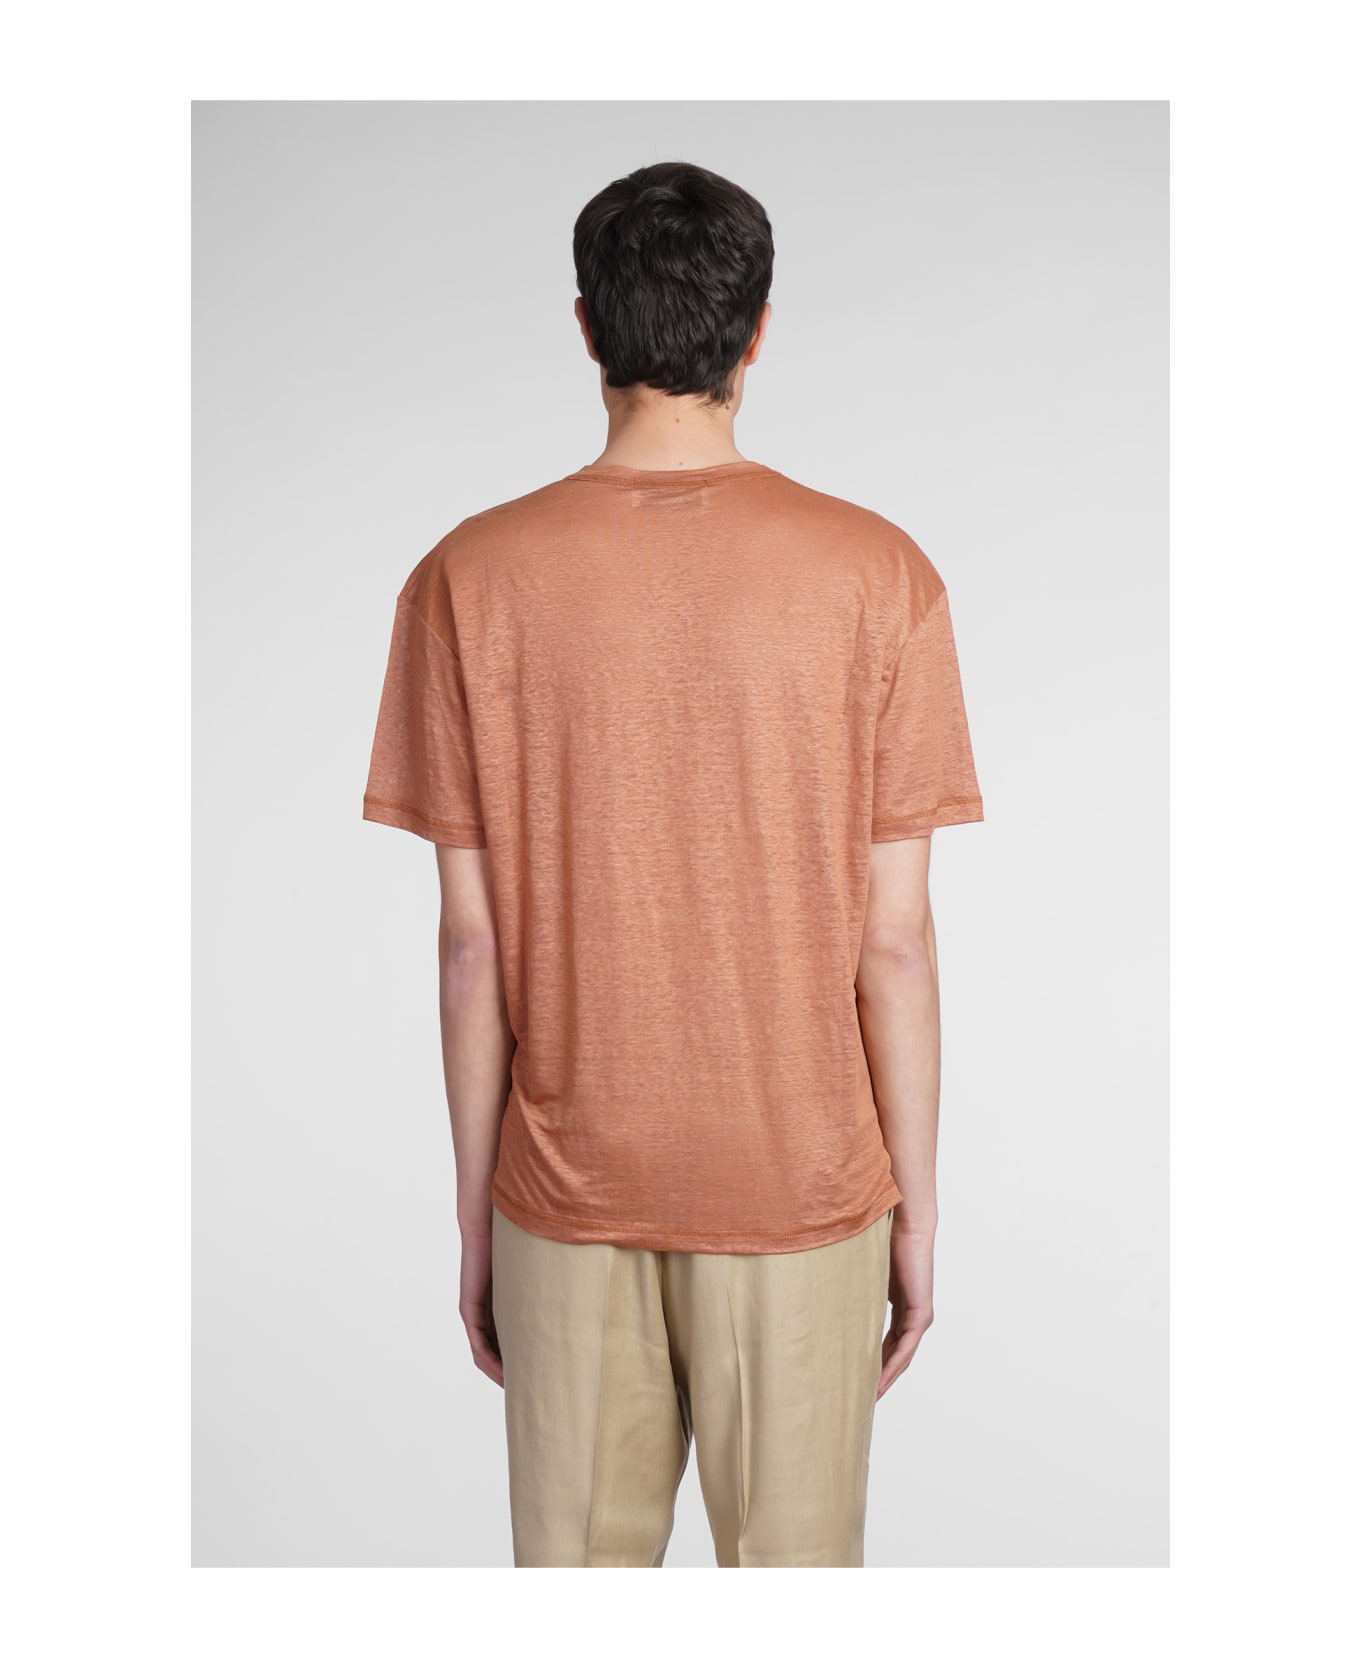 costumein T-shirt In Brown Linen シャツ